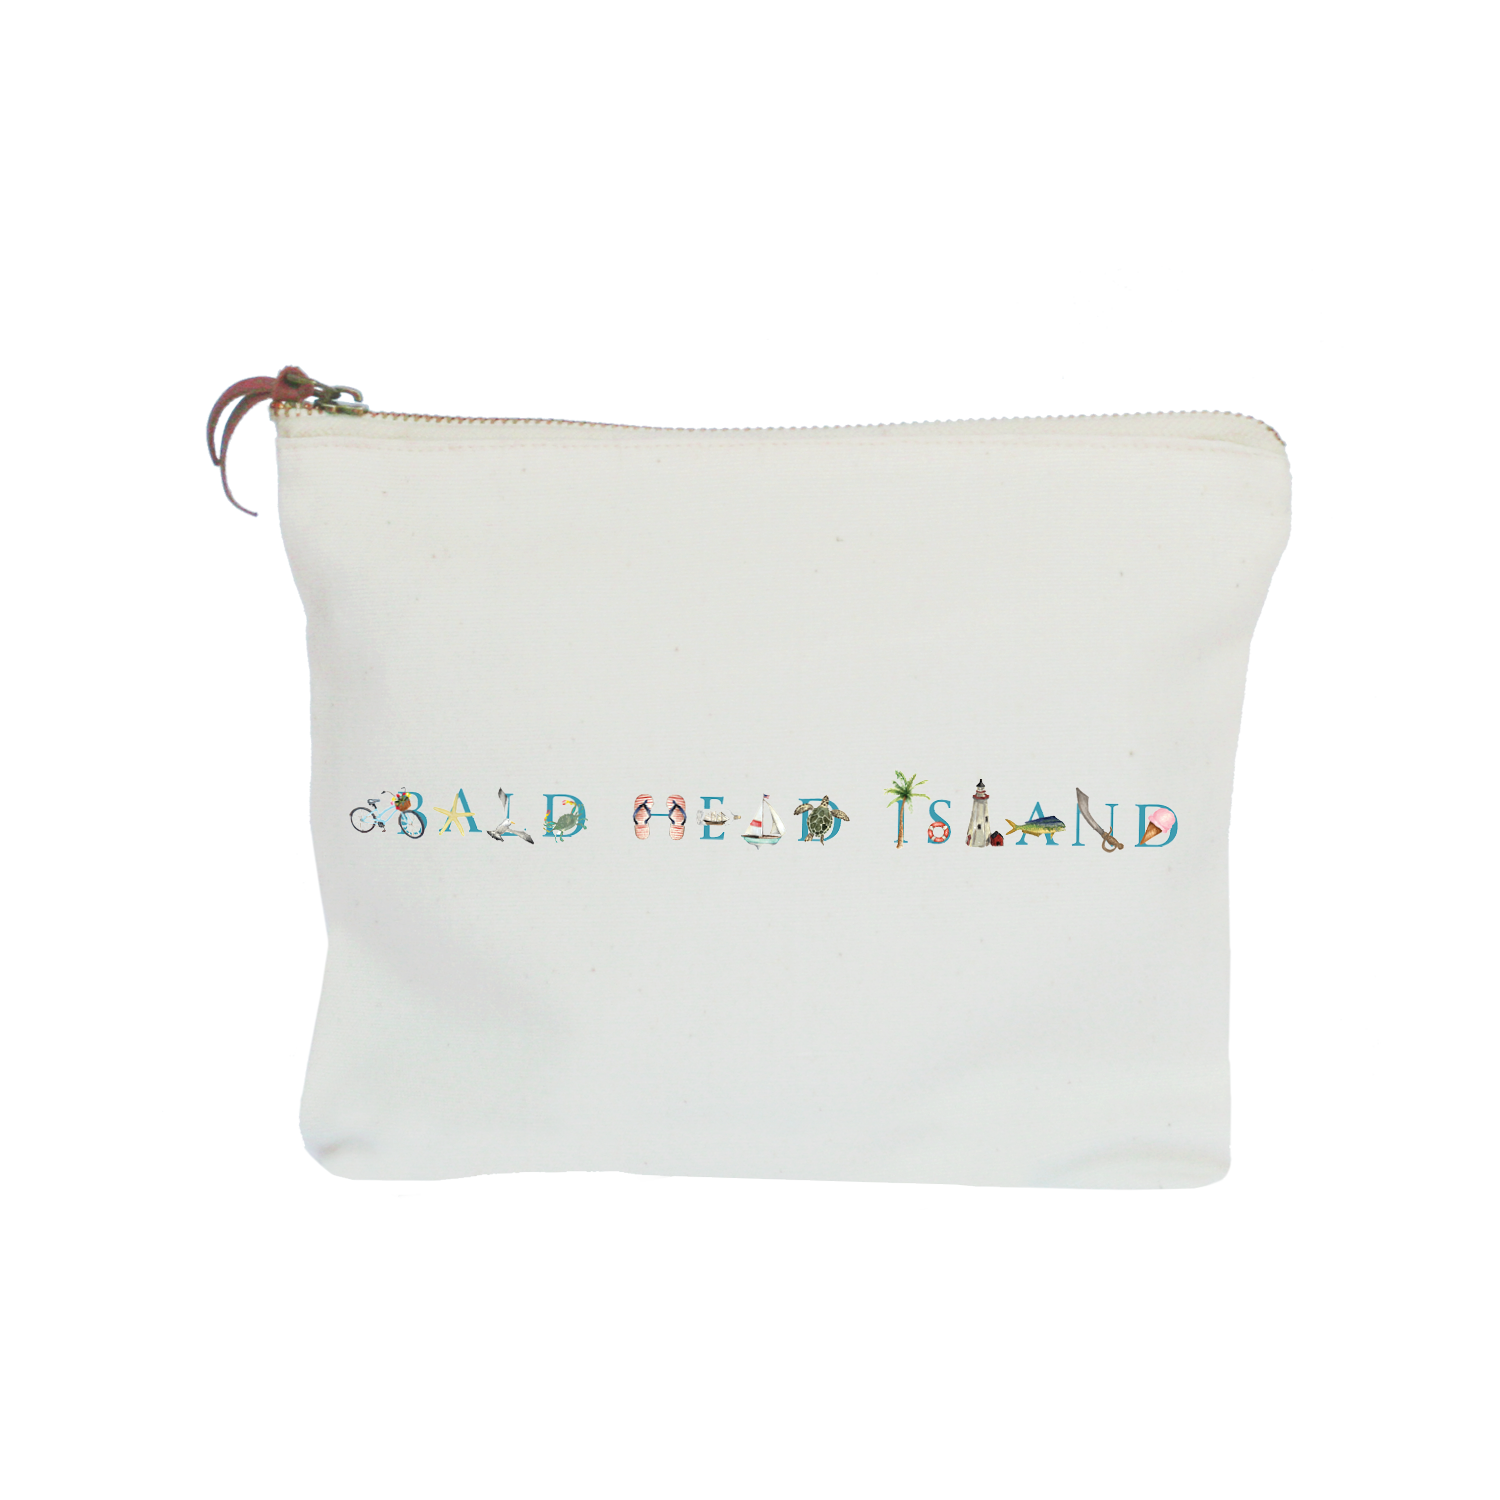 Bald Head Island zipper pouch